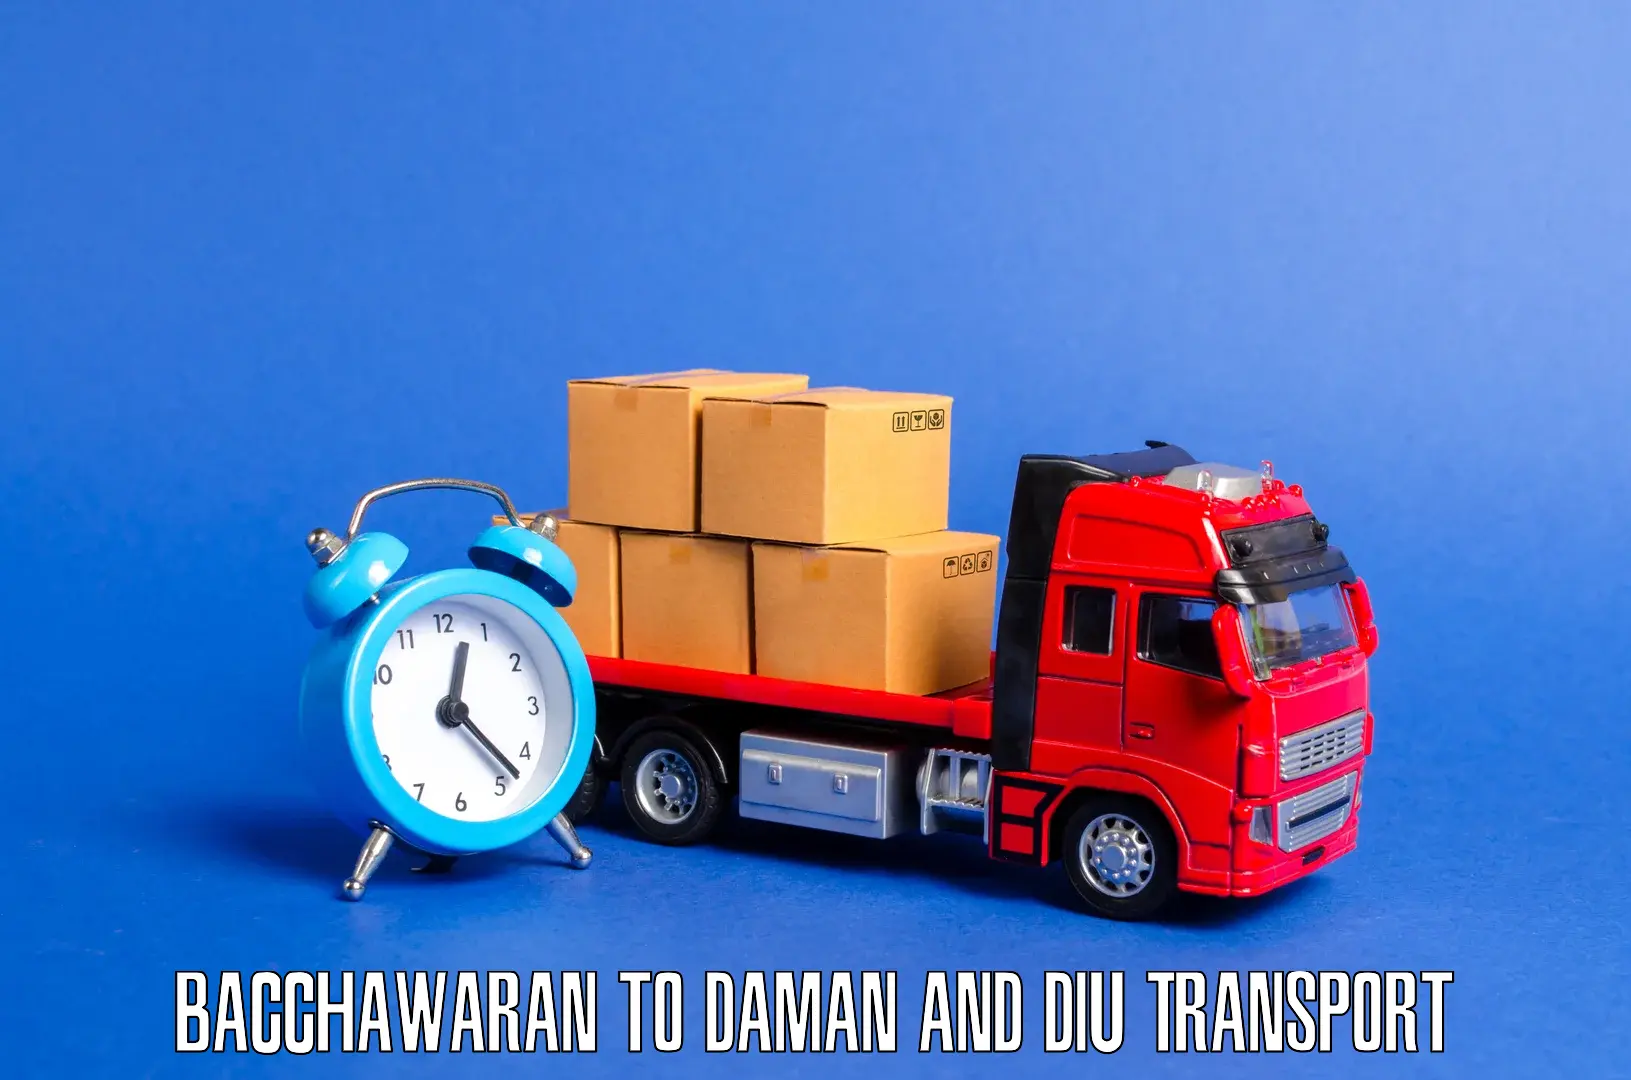 Express transport services Bacchawaran to Daman and Diu